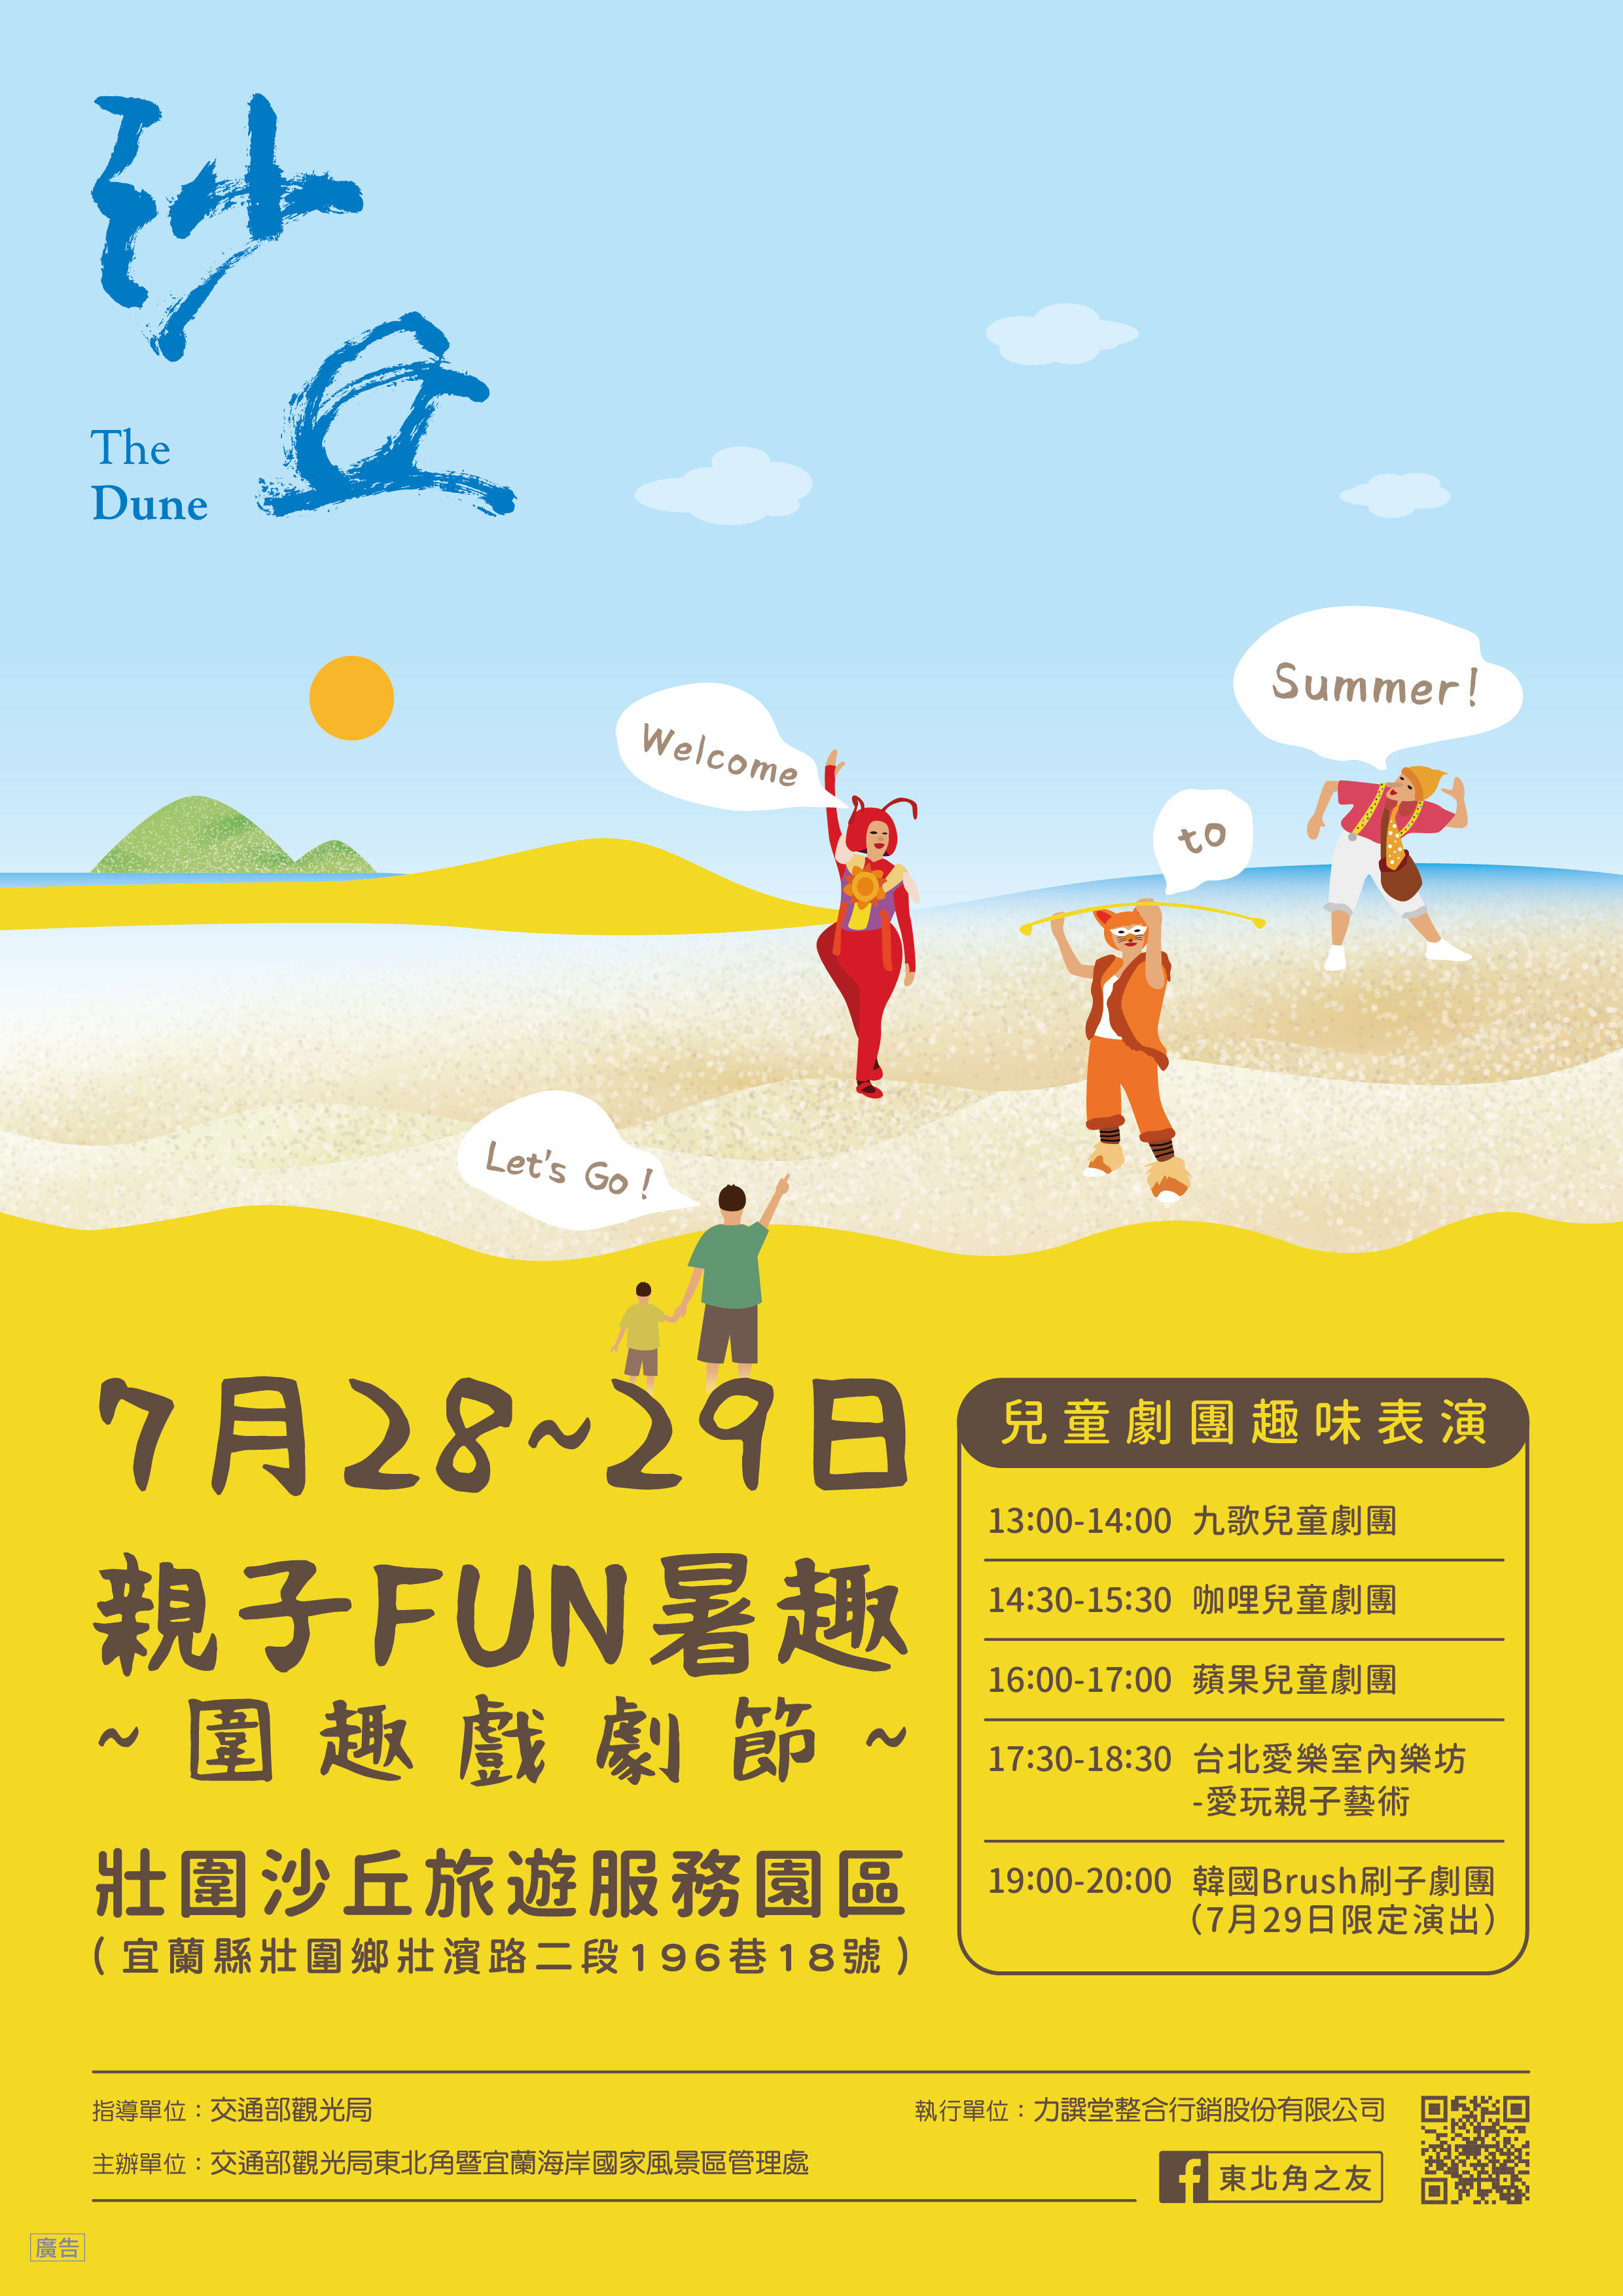 Zhuangwei Tourism Service Park (Summer)_A4 Flyer